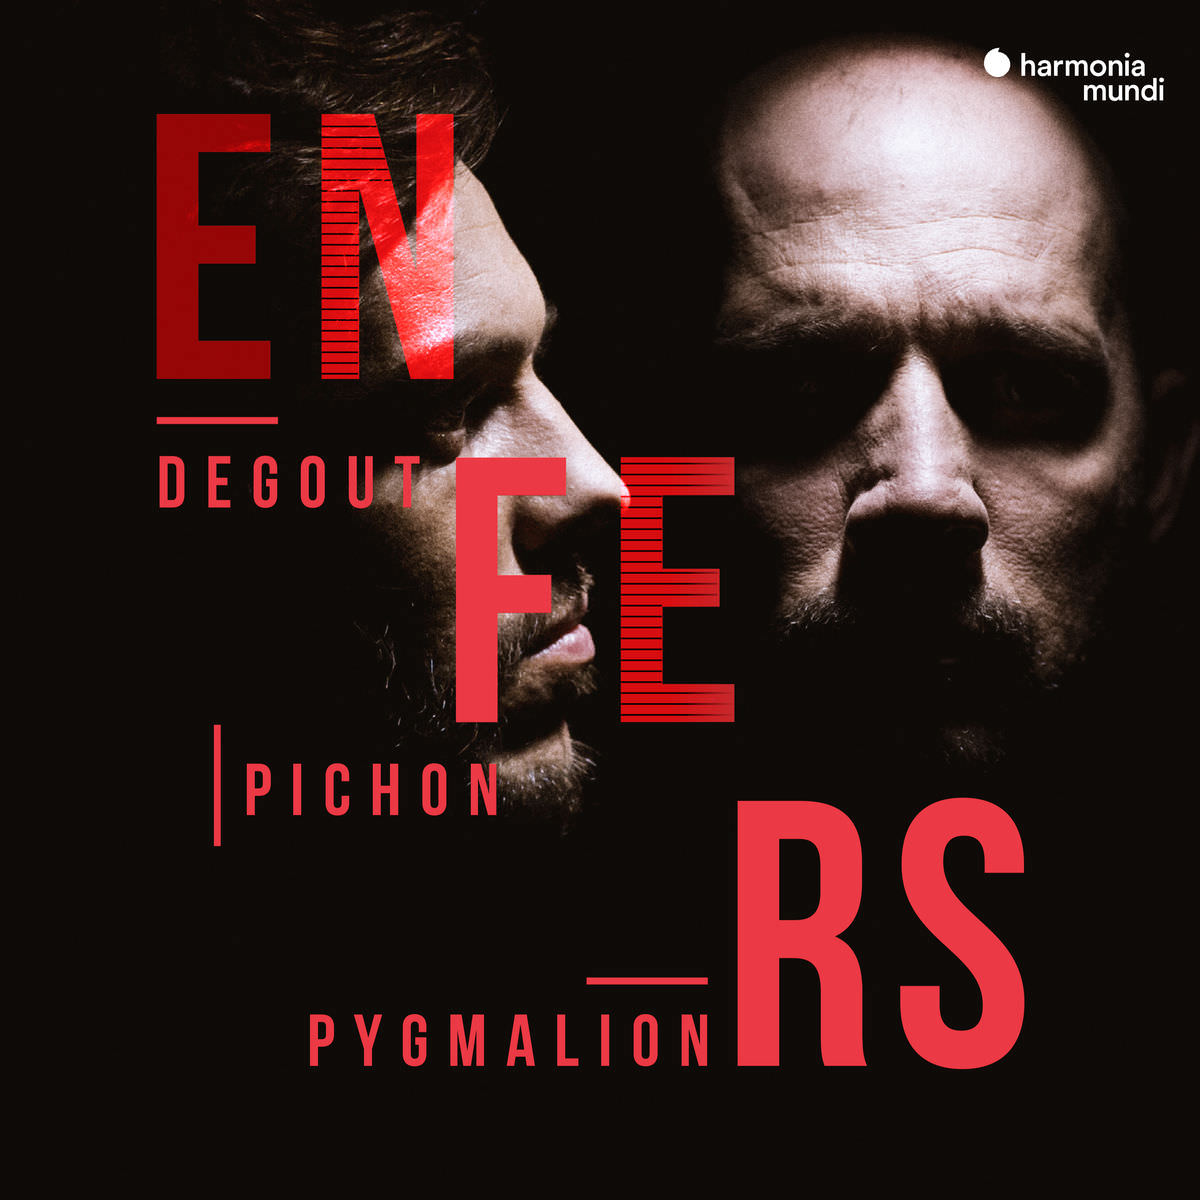 Stéphane Degout, Pygmalion, Raphaël Pichon - Enfers (2018) [FLAC 24bit/96kHz]